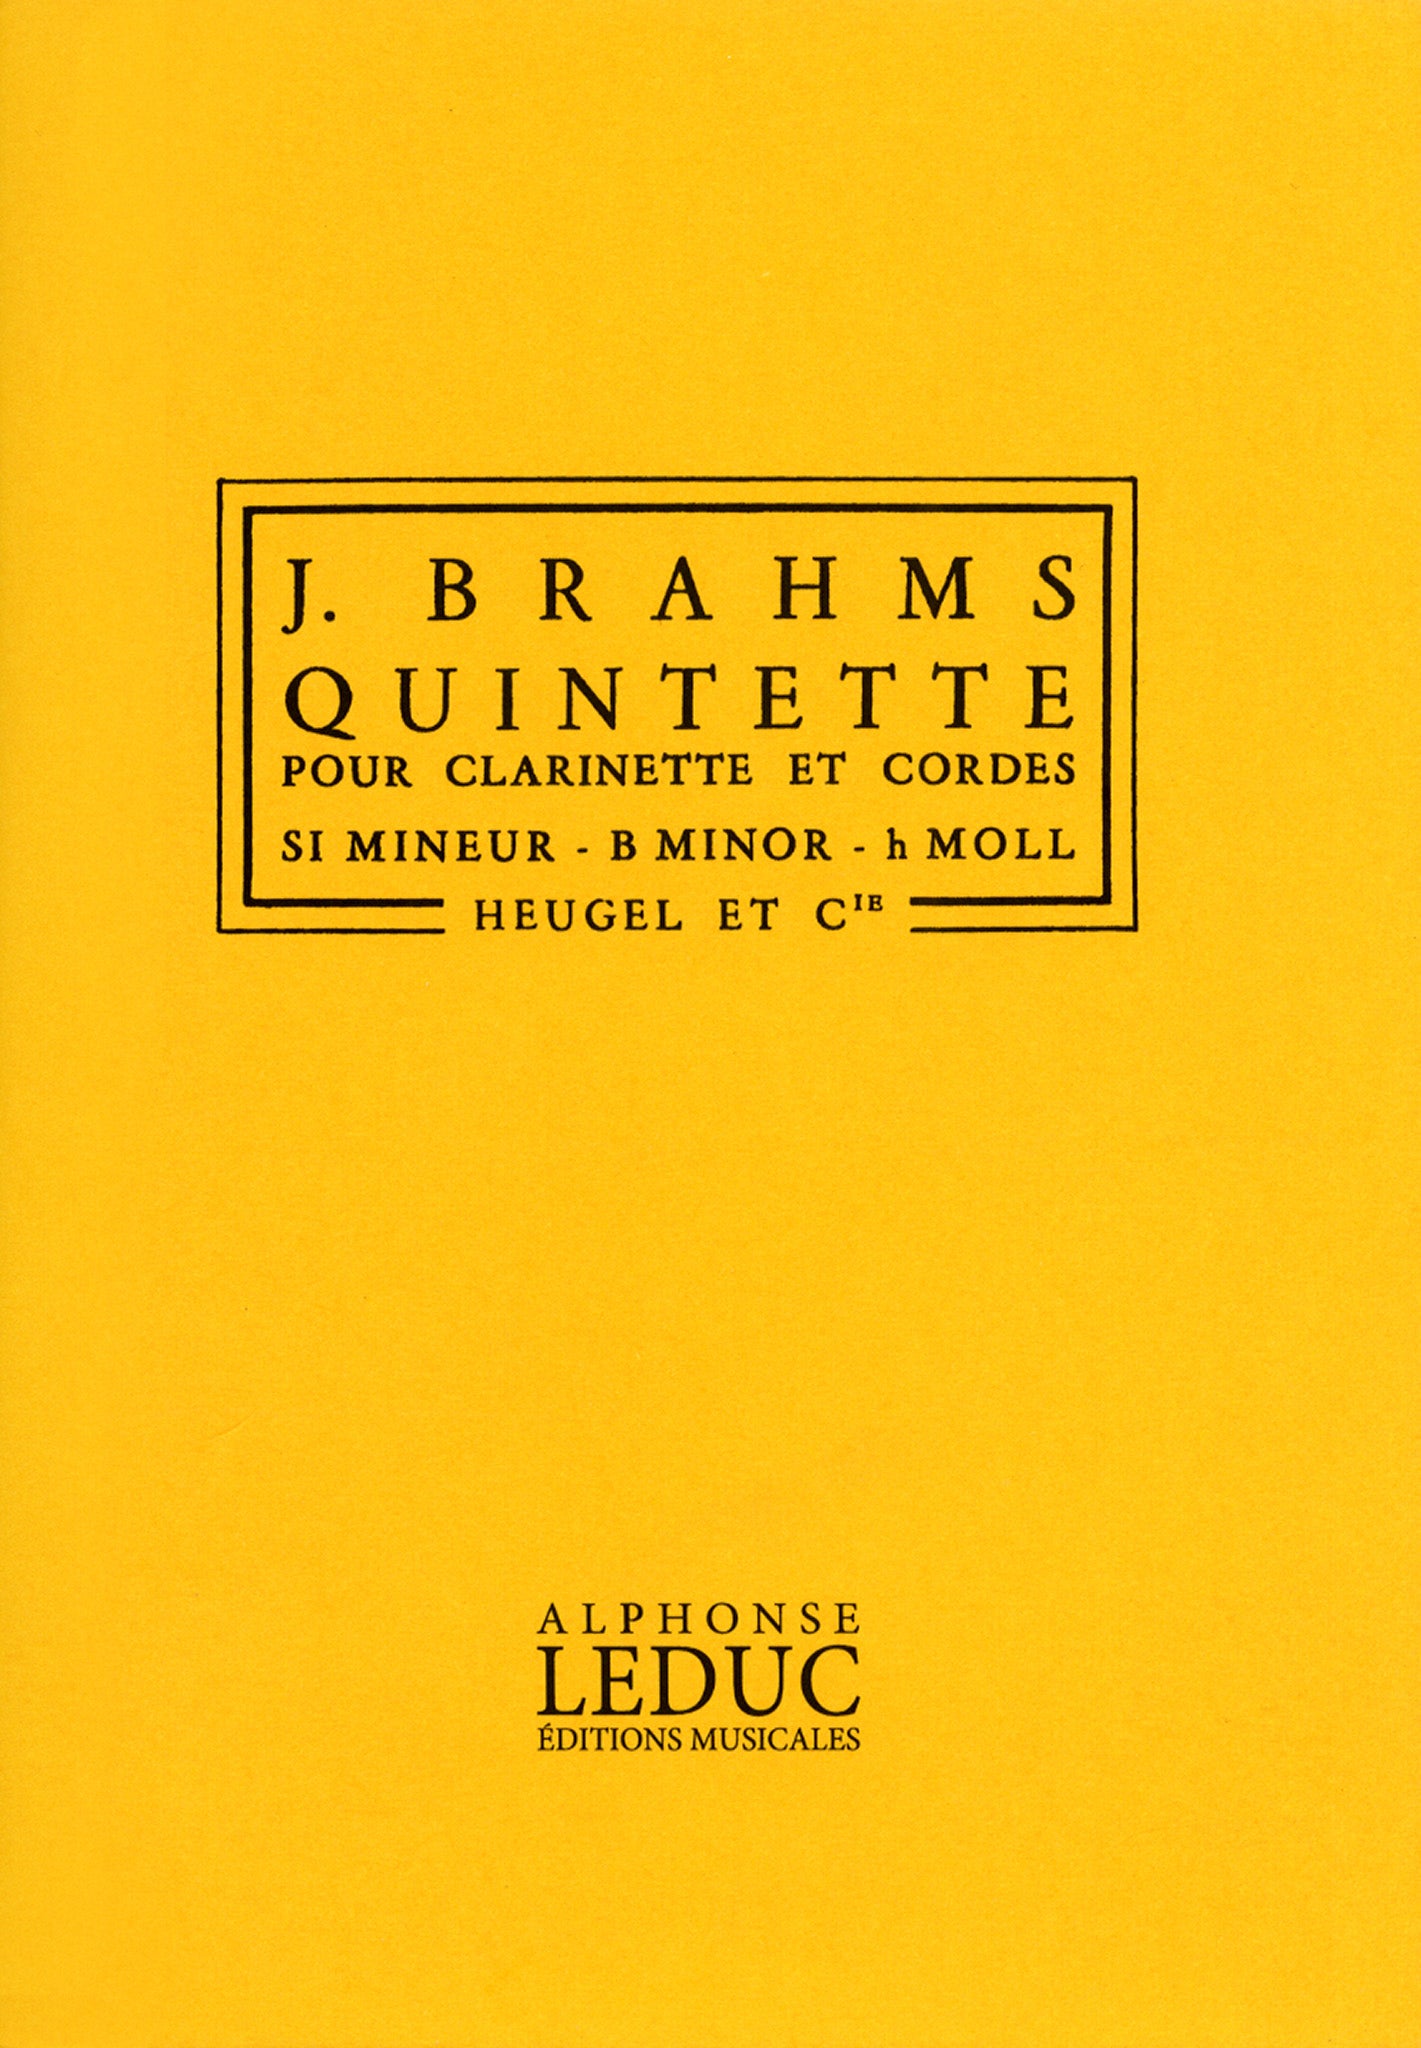 Brahms Clarinet Quintet, Op. 115 pocket score Cover